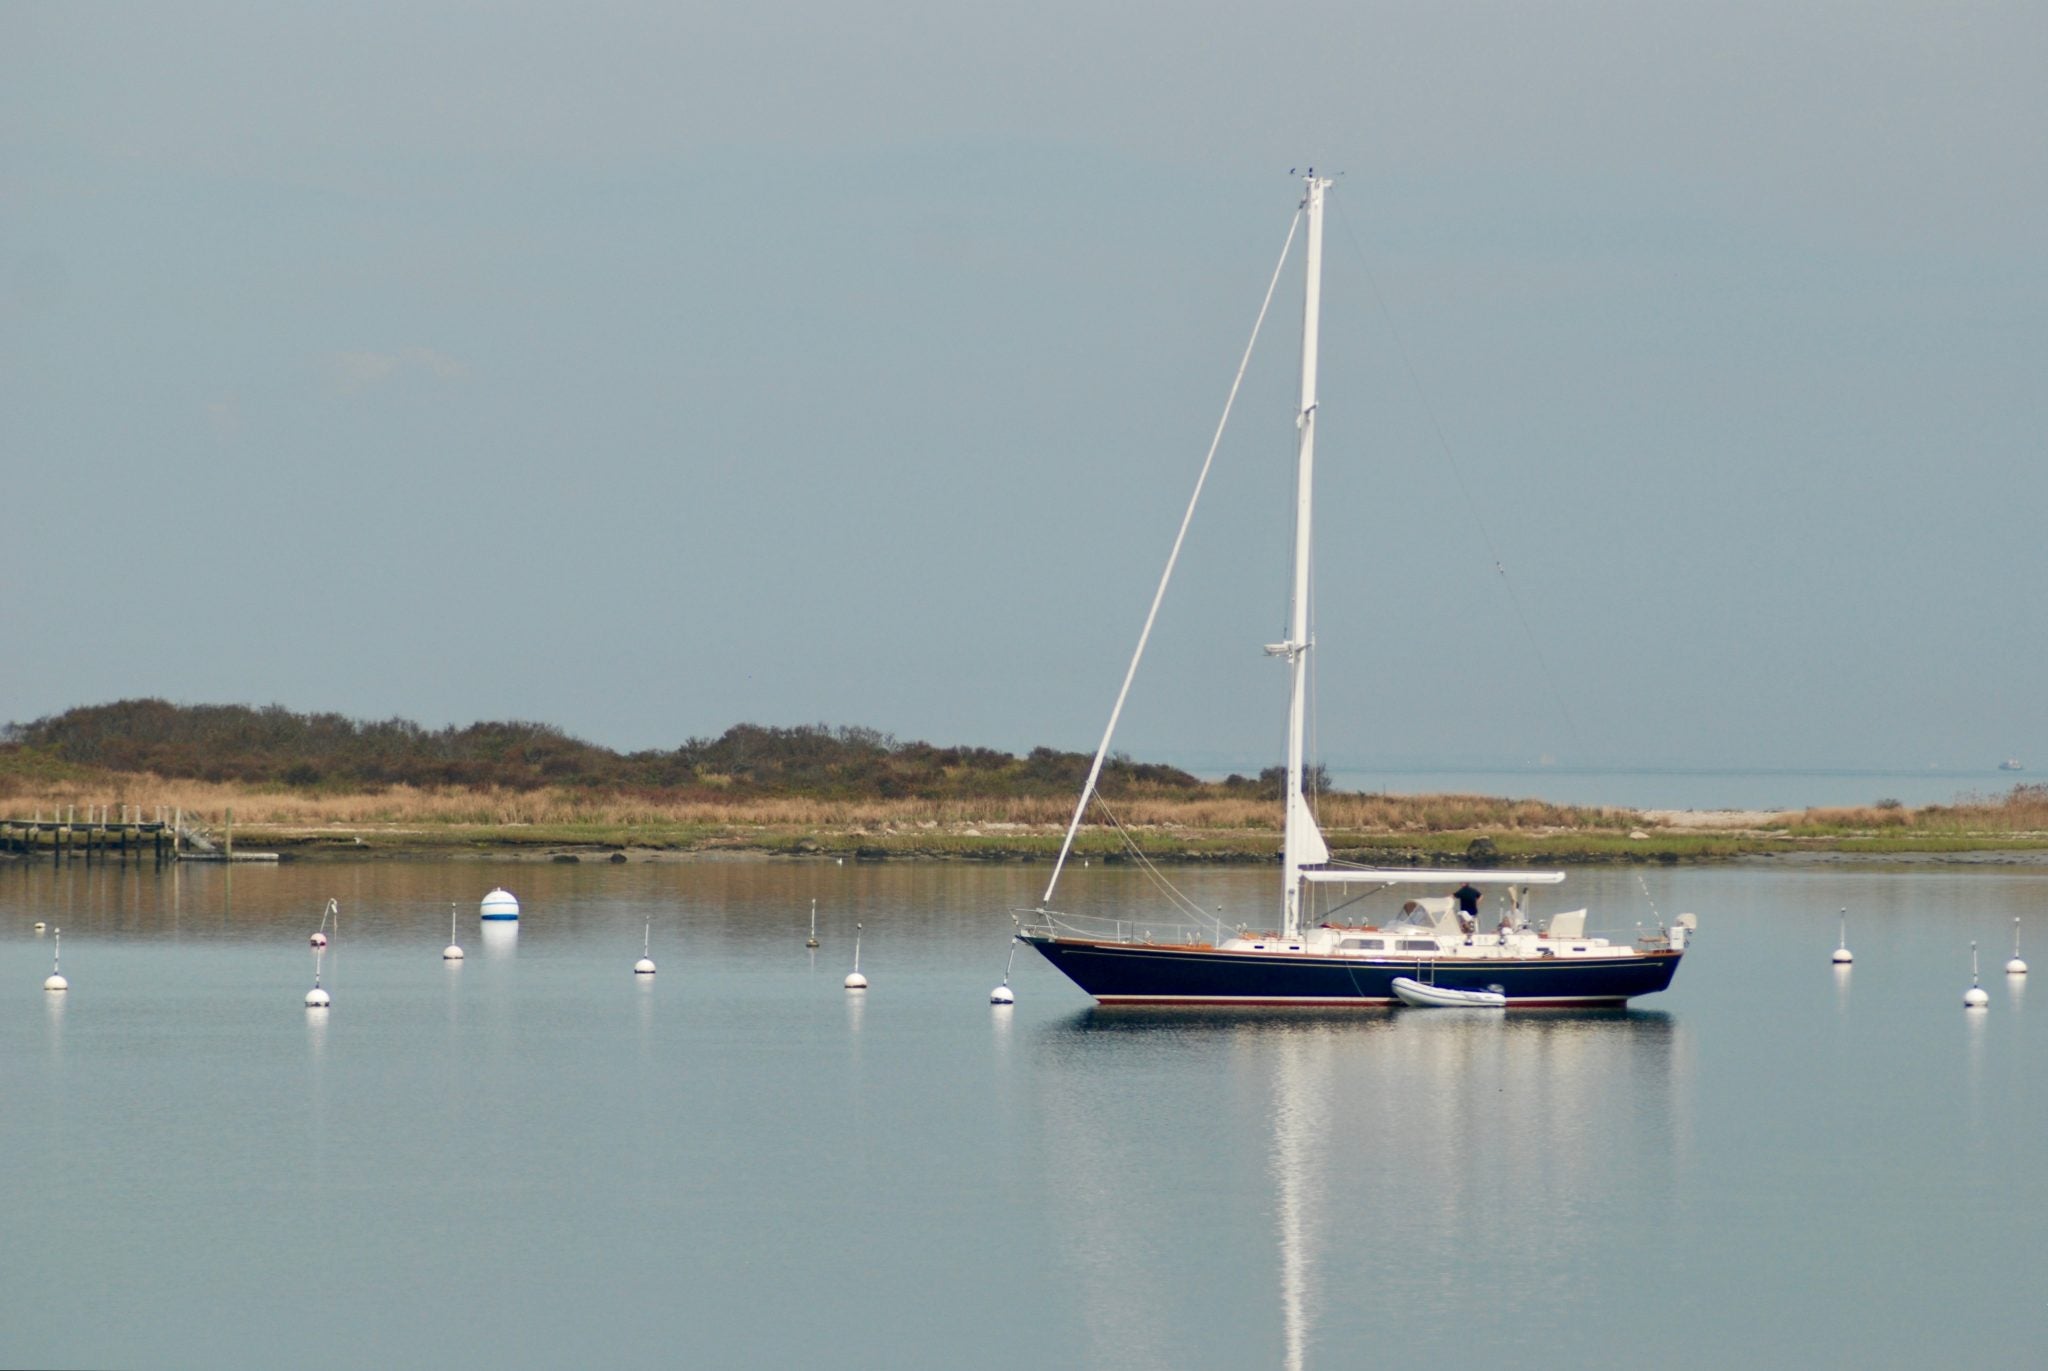 Remote & Afloat: 5 Destinations for Boating Solitude